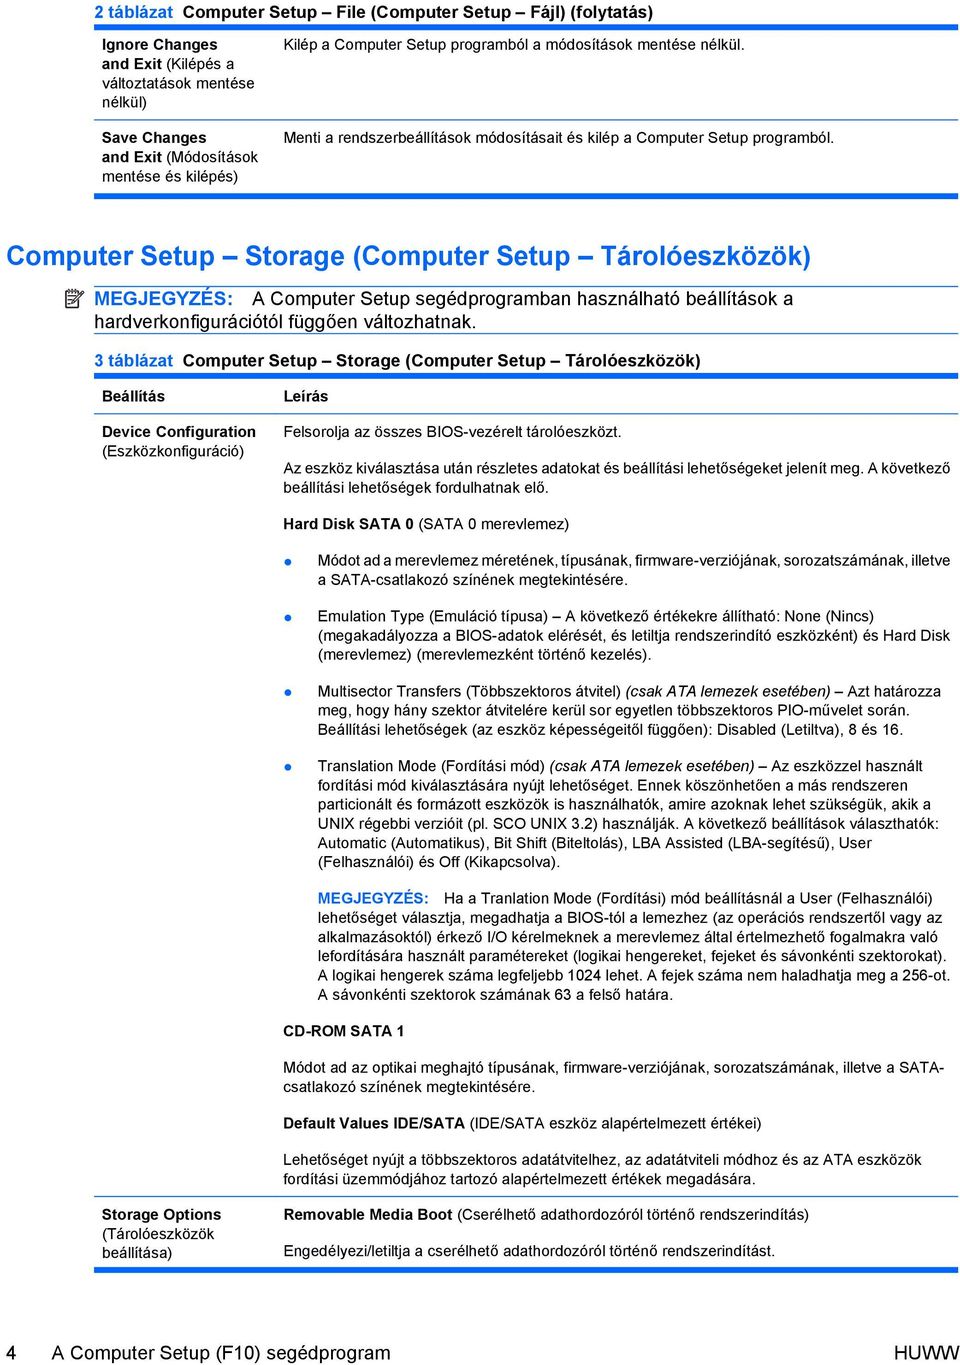 Computer Setup Storage (Computer Setup Tárolóeszközök) MEGJEGYZÉS: A Computer Setup segédprogramban használható beállítások a hardverkonfigurációtól függően változhatnak.